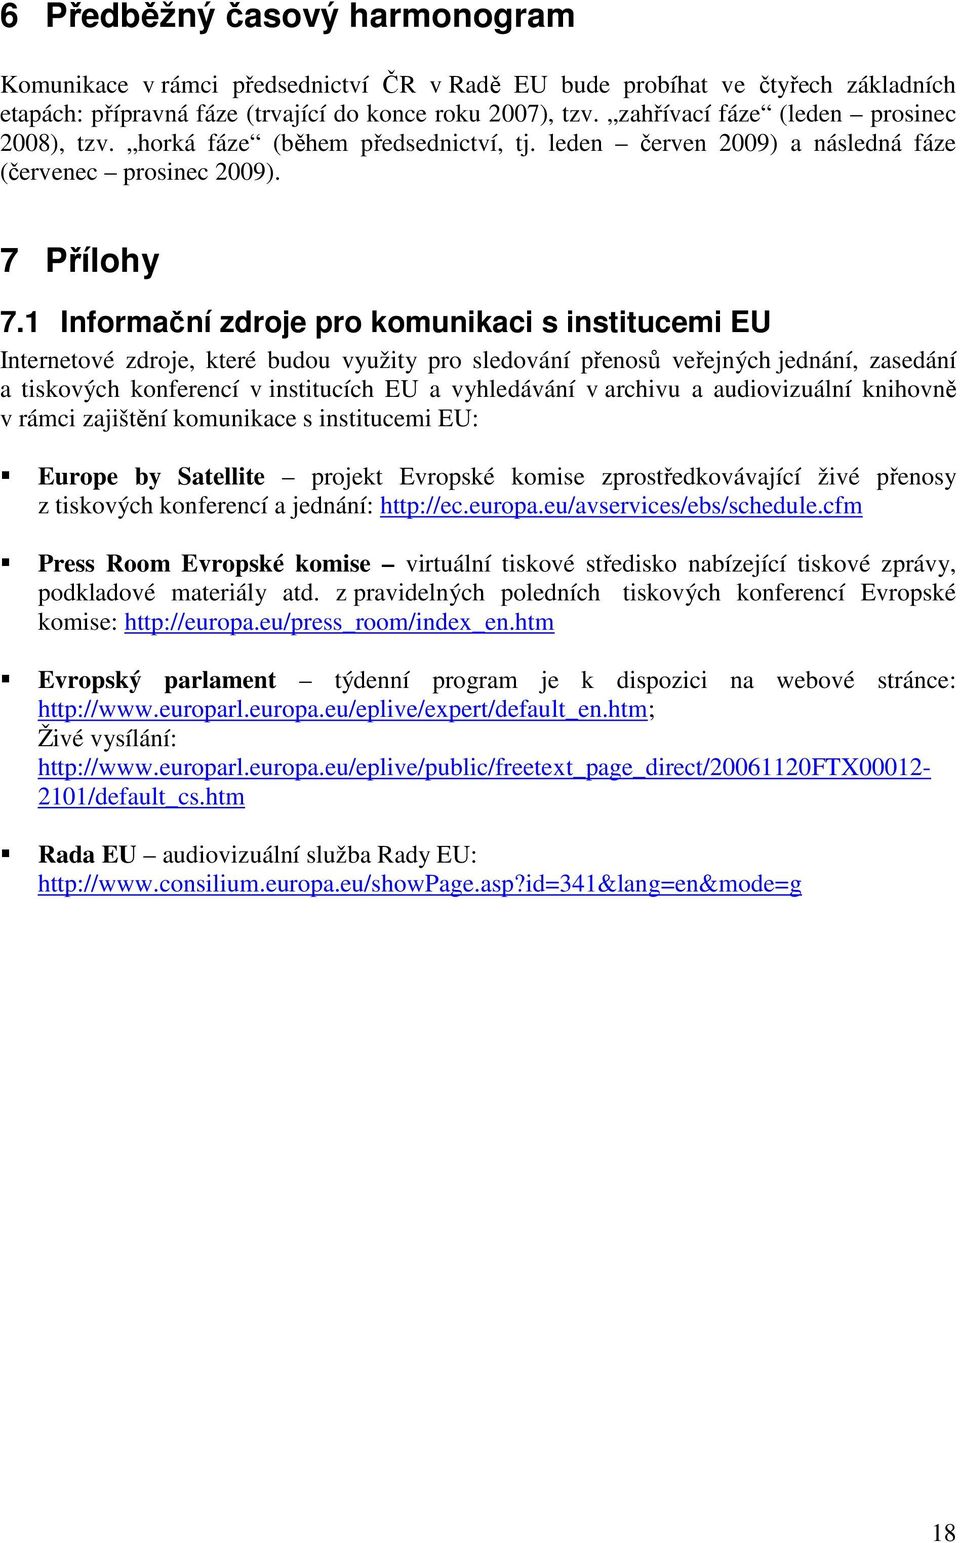 1 Informační zdroje pro komunikaci s institucemi EU Internetové zdroje, které budou využity pro sledování přenosů veřejných jednání, zasedání a tiskových konferencí v institucích EU a vyhledávání v